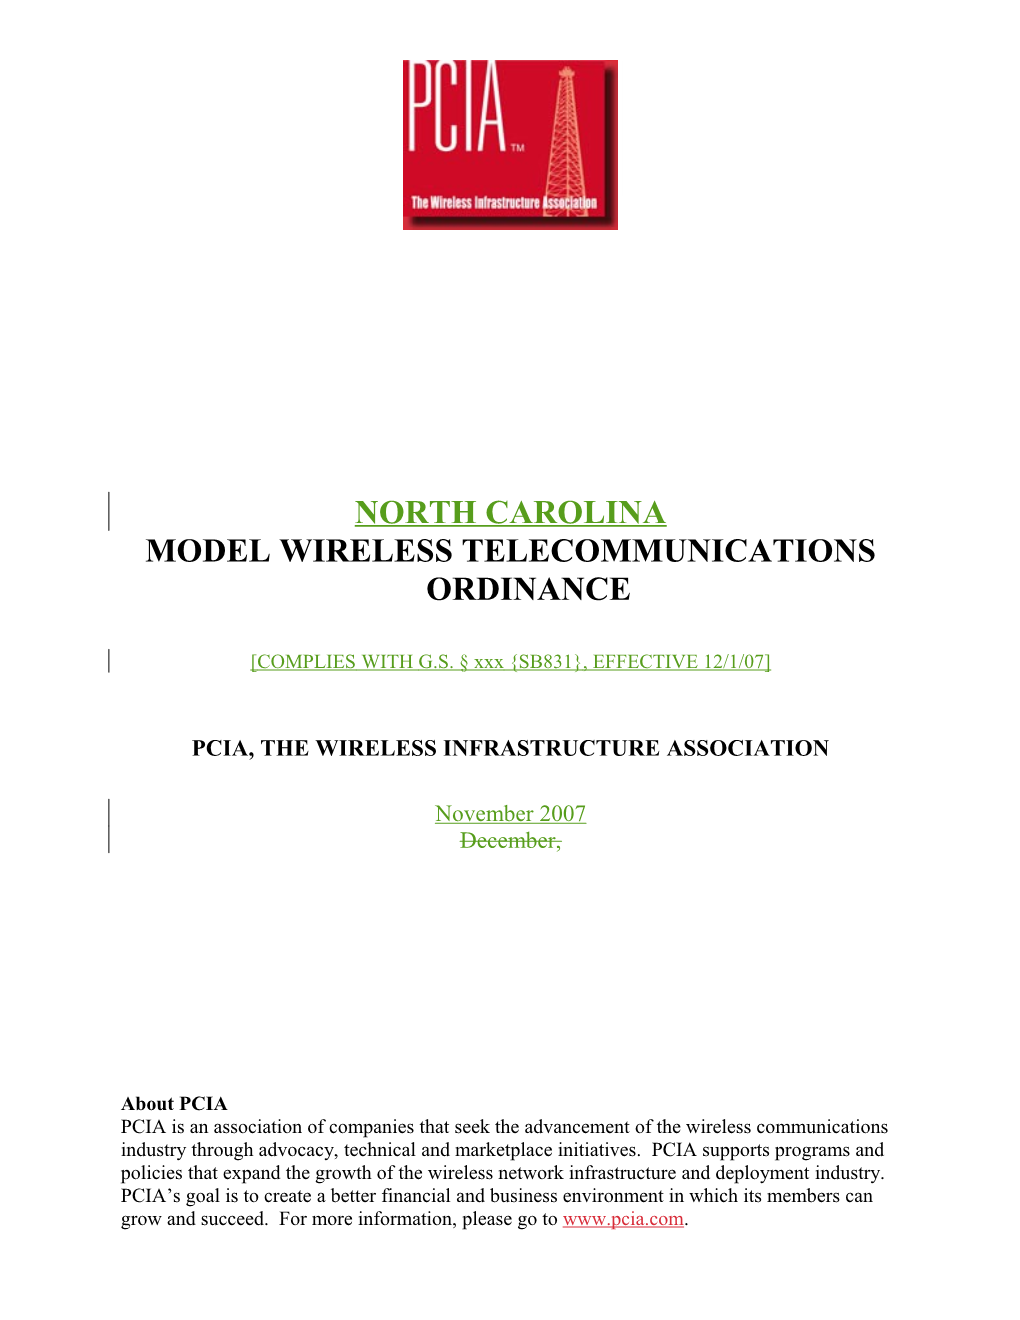 Model Wireless Telecommunications Ordinance